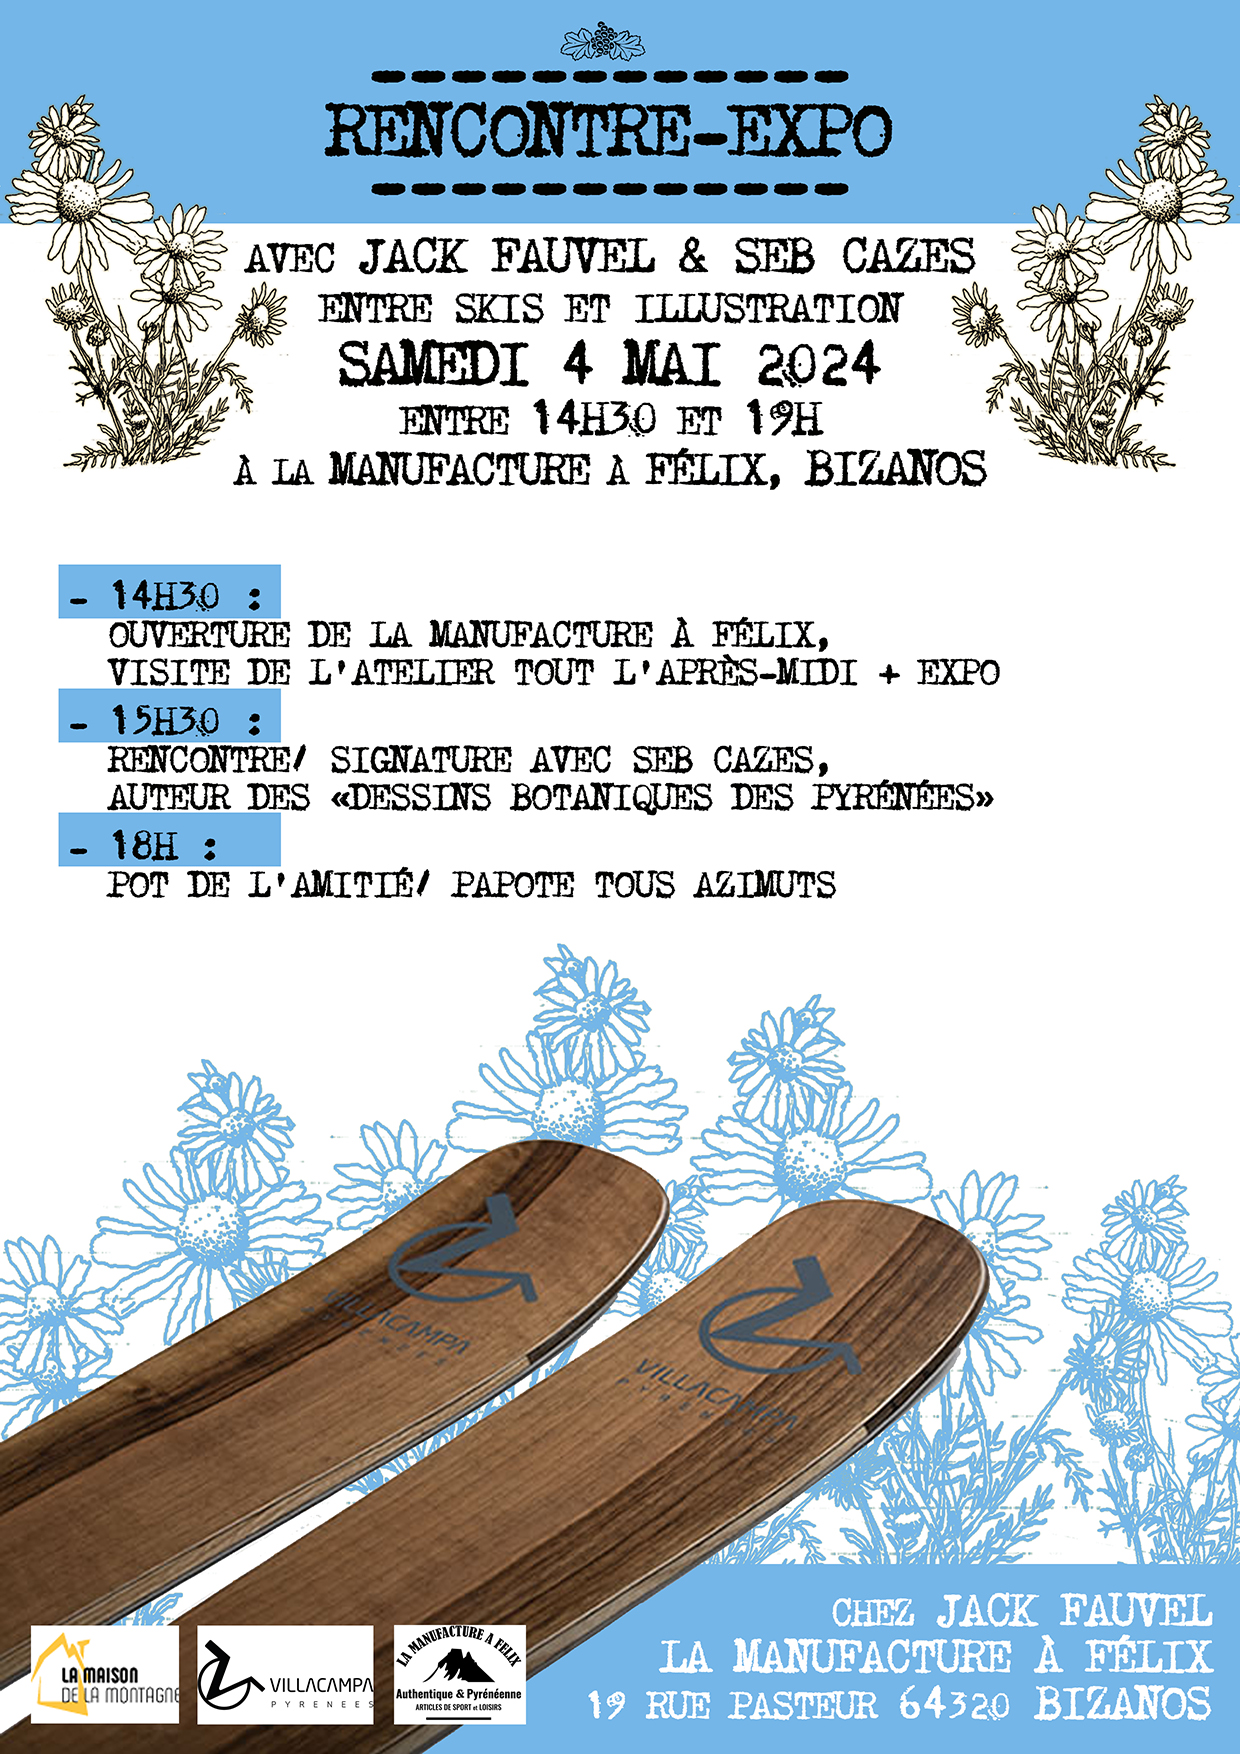 Rencontre-expo Jack Fauvel et Seb Cazes, entre skis et illustration @ La manufacture [à Félix] 